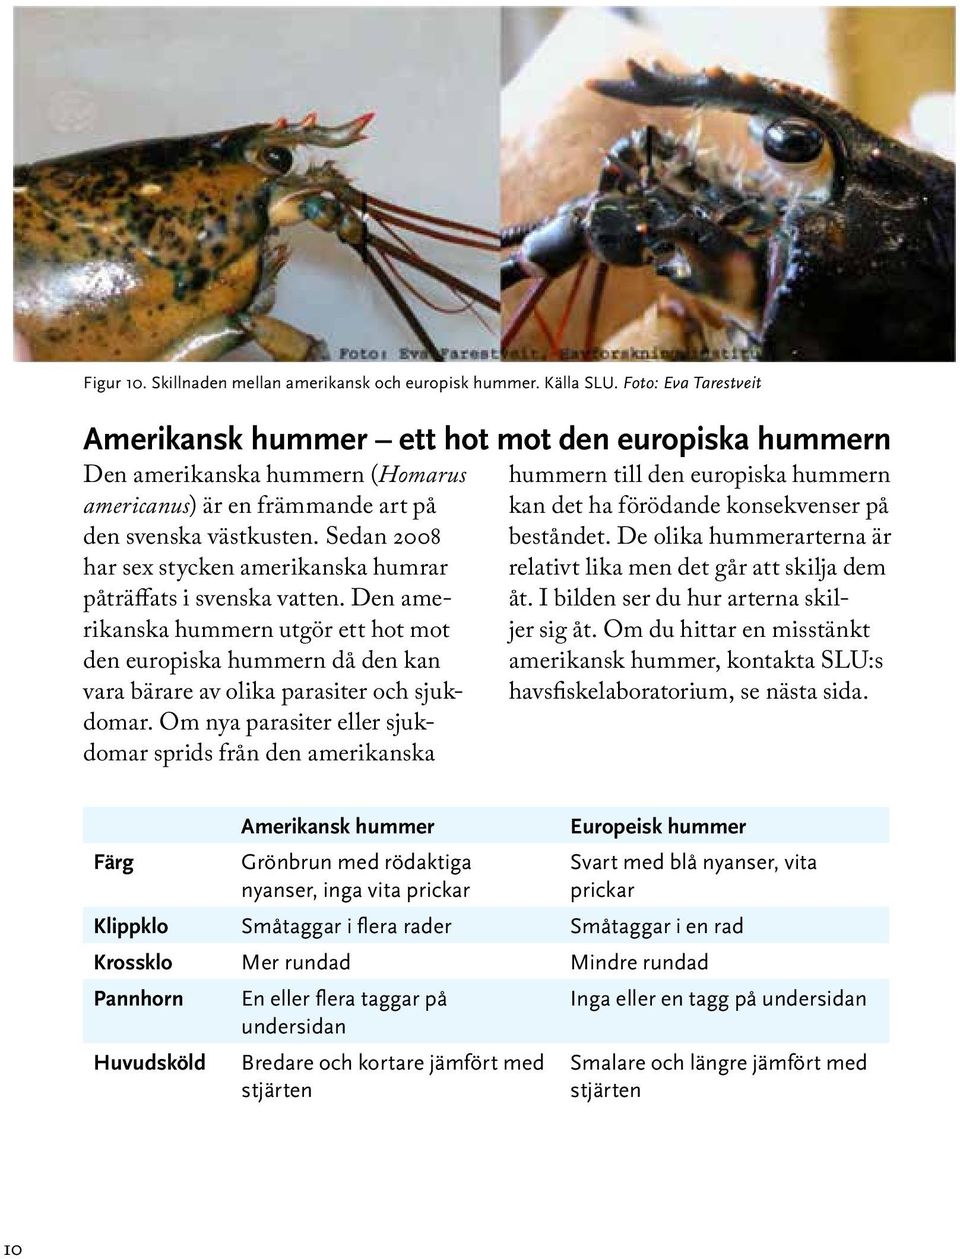 Sedan 2008 har sex stycken amerikanska humrar påträffats i svenska vatten. Den amerikanska hummern utgör ett hot mot den europiska hummern då den kan vara bärare av olika parasiter och sjukdomar.